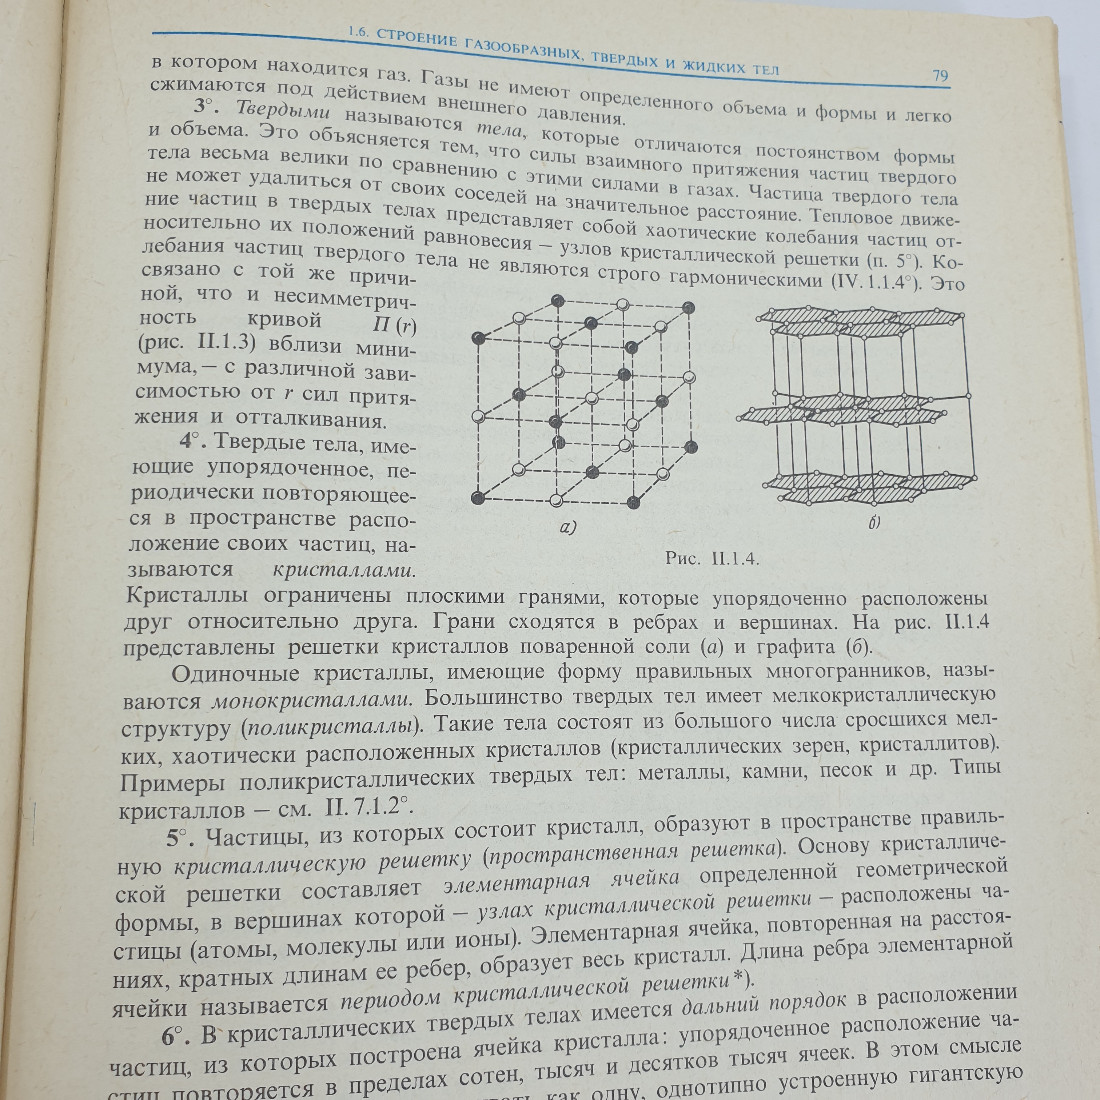 Б.М. Яворский, Ю.А. Селезнёв "Справочное руководство по физике". Картинка 11